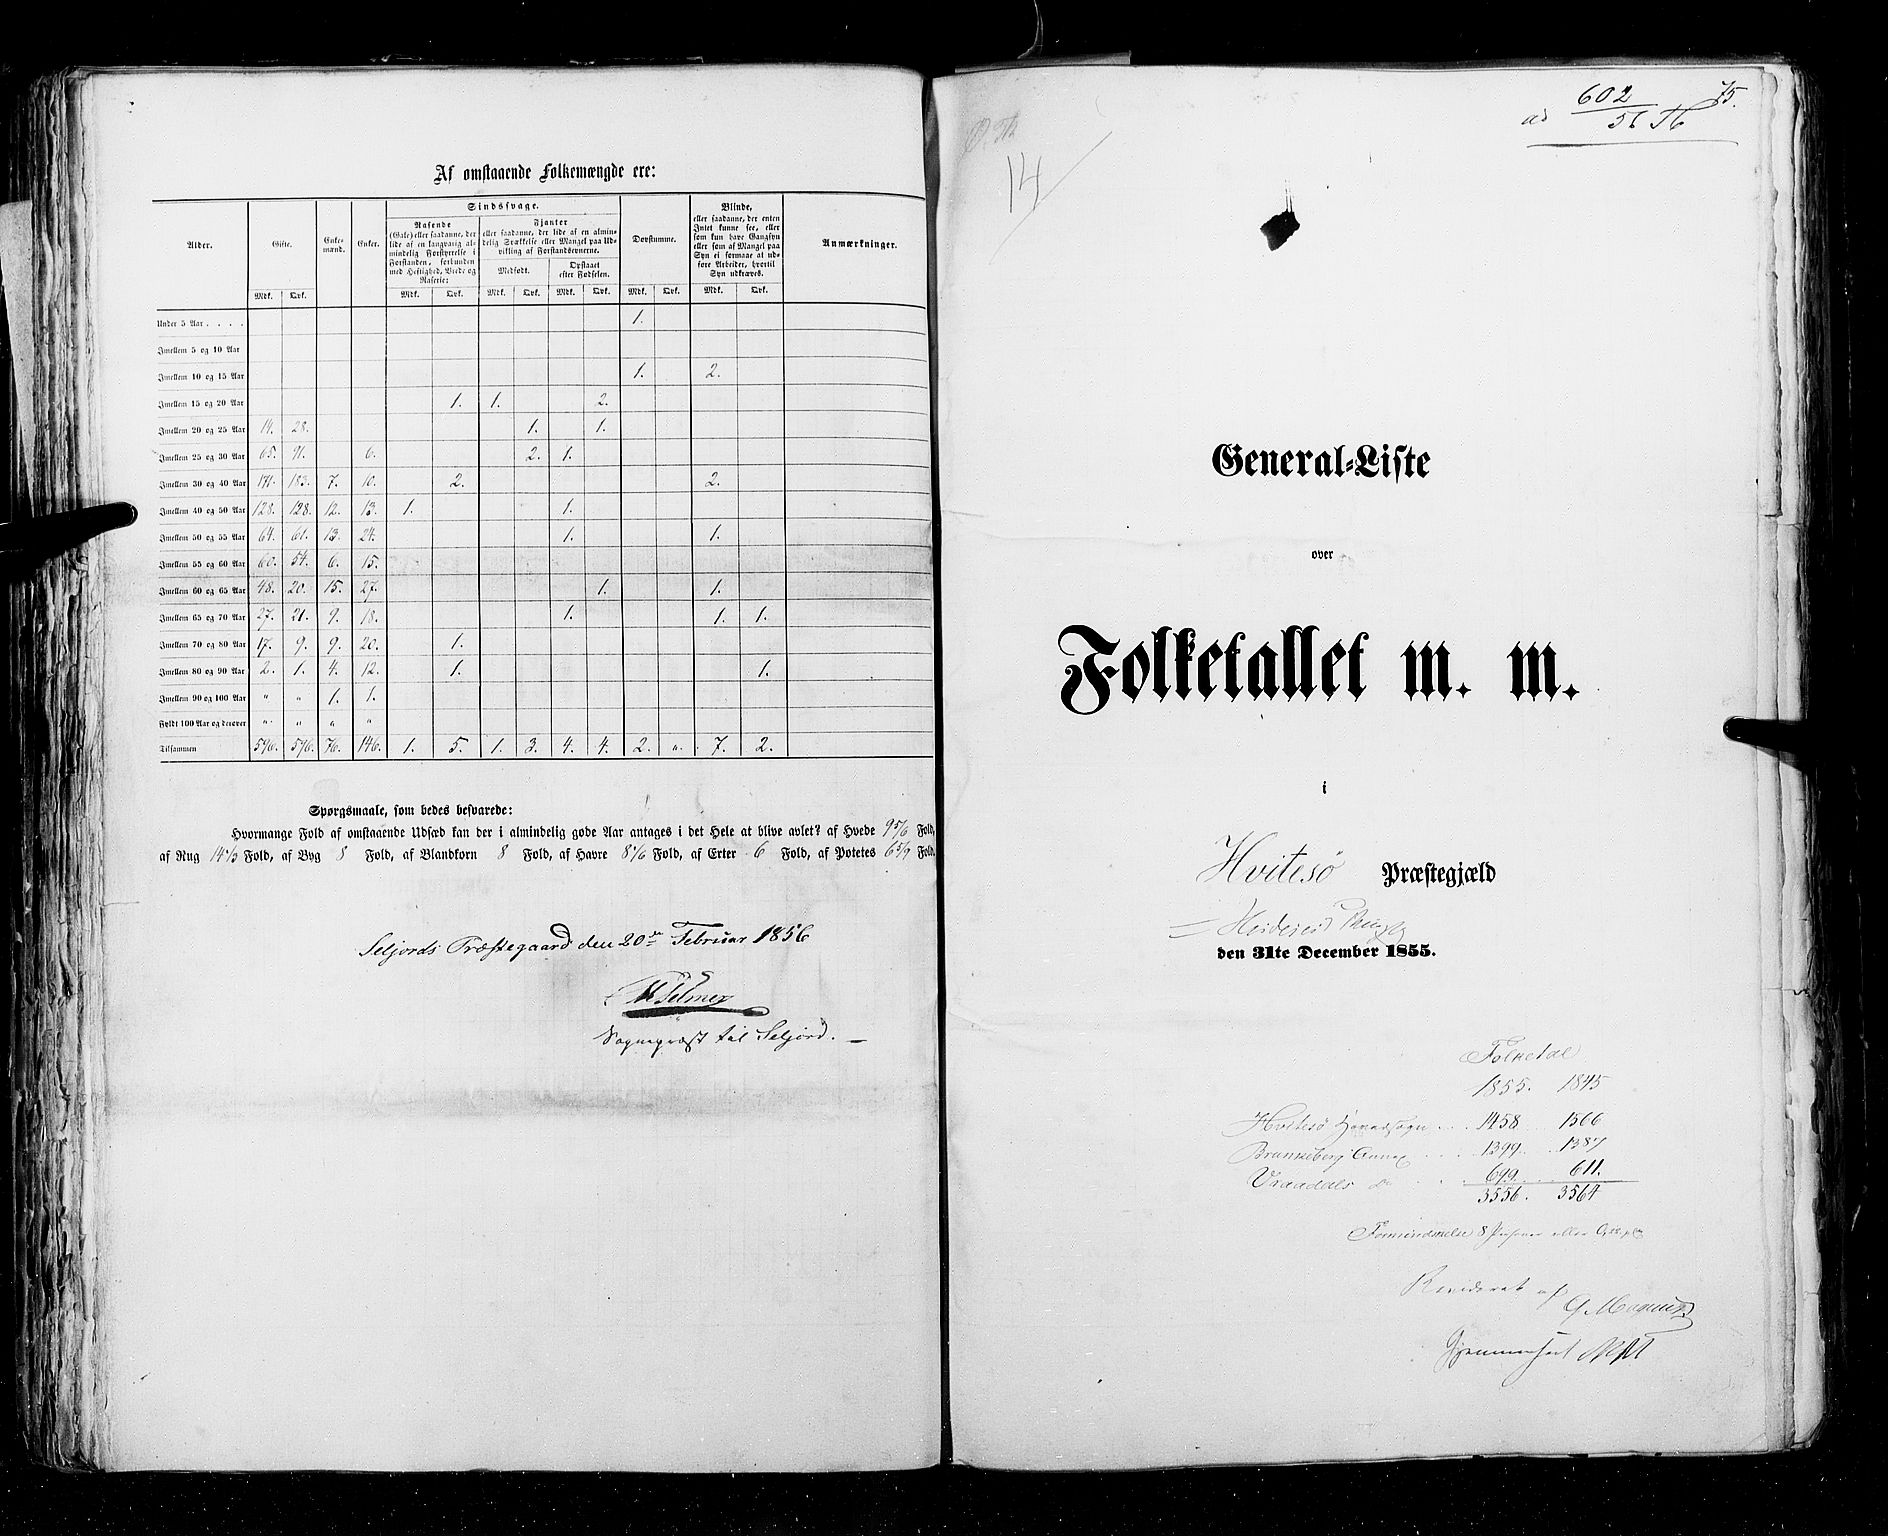 RA, Folketellingen 1855, bind 3: Bratsberg amt, Nedenes amt og Lister og Mandal amt, 1855, s. 75